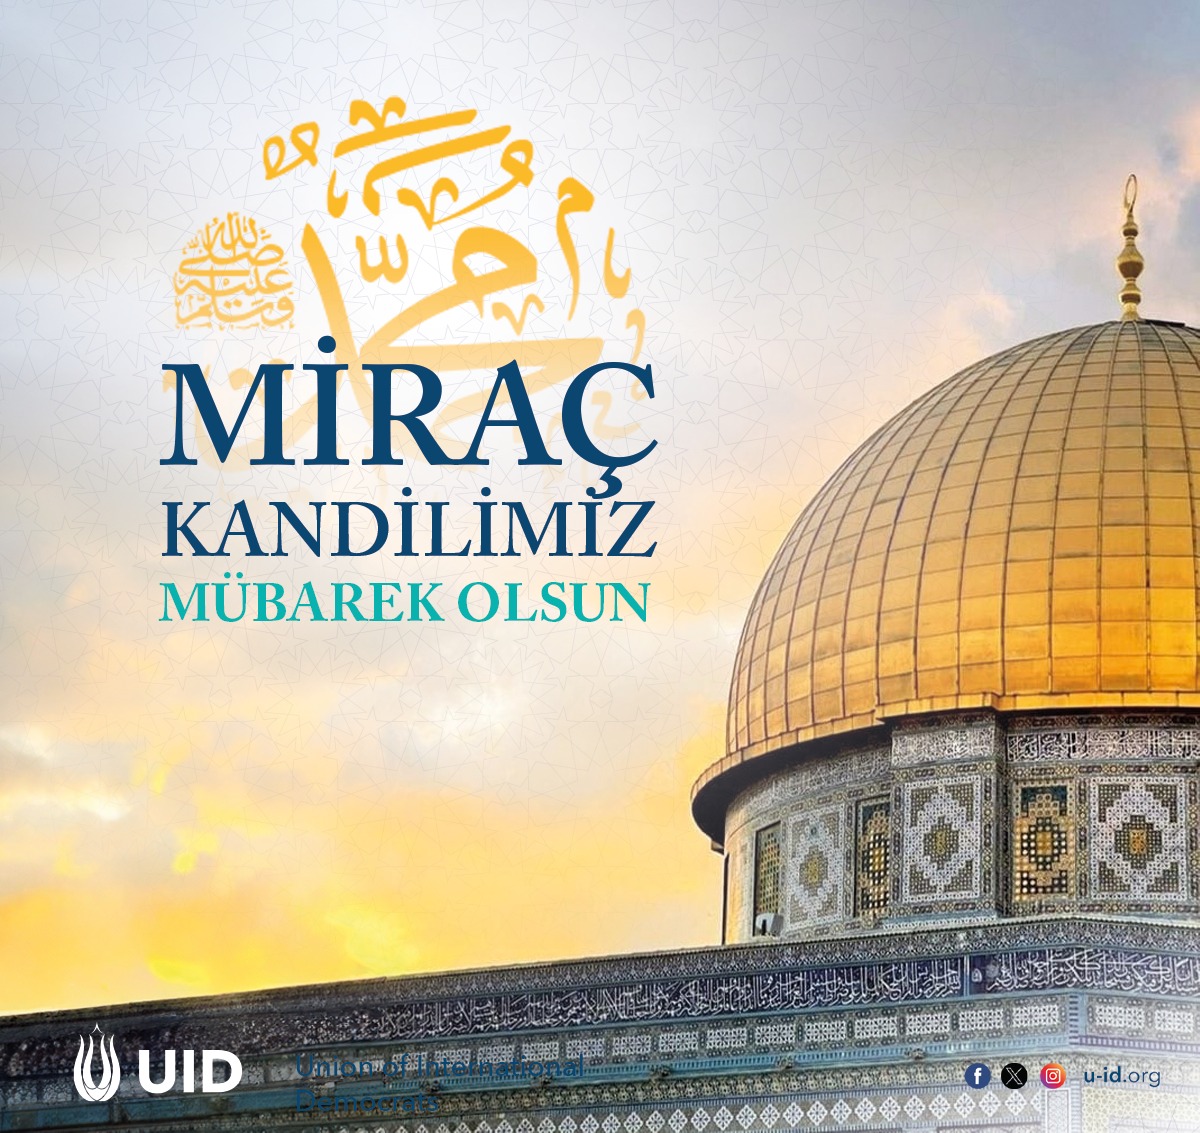 🇹🇷 Miraç Kandilimiz mübarek olsun. Dualarınız kabul olsun. 🇩🇪 Wir wünschen allen Muslimen eine gesegnete und friedvolle Miradsch-Nacht. 🇬🇧 We wish all Muslims a blessed and peaceful Miraj night.